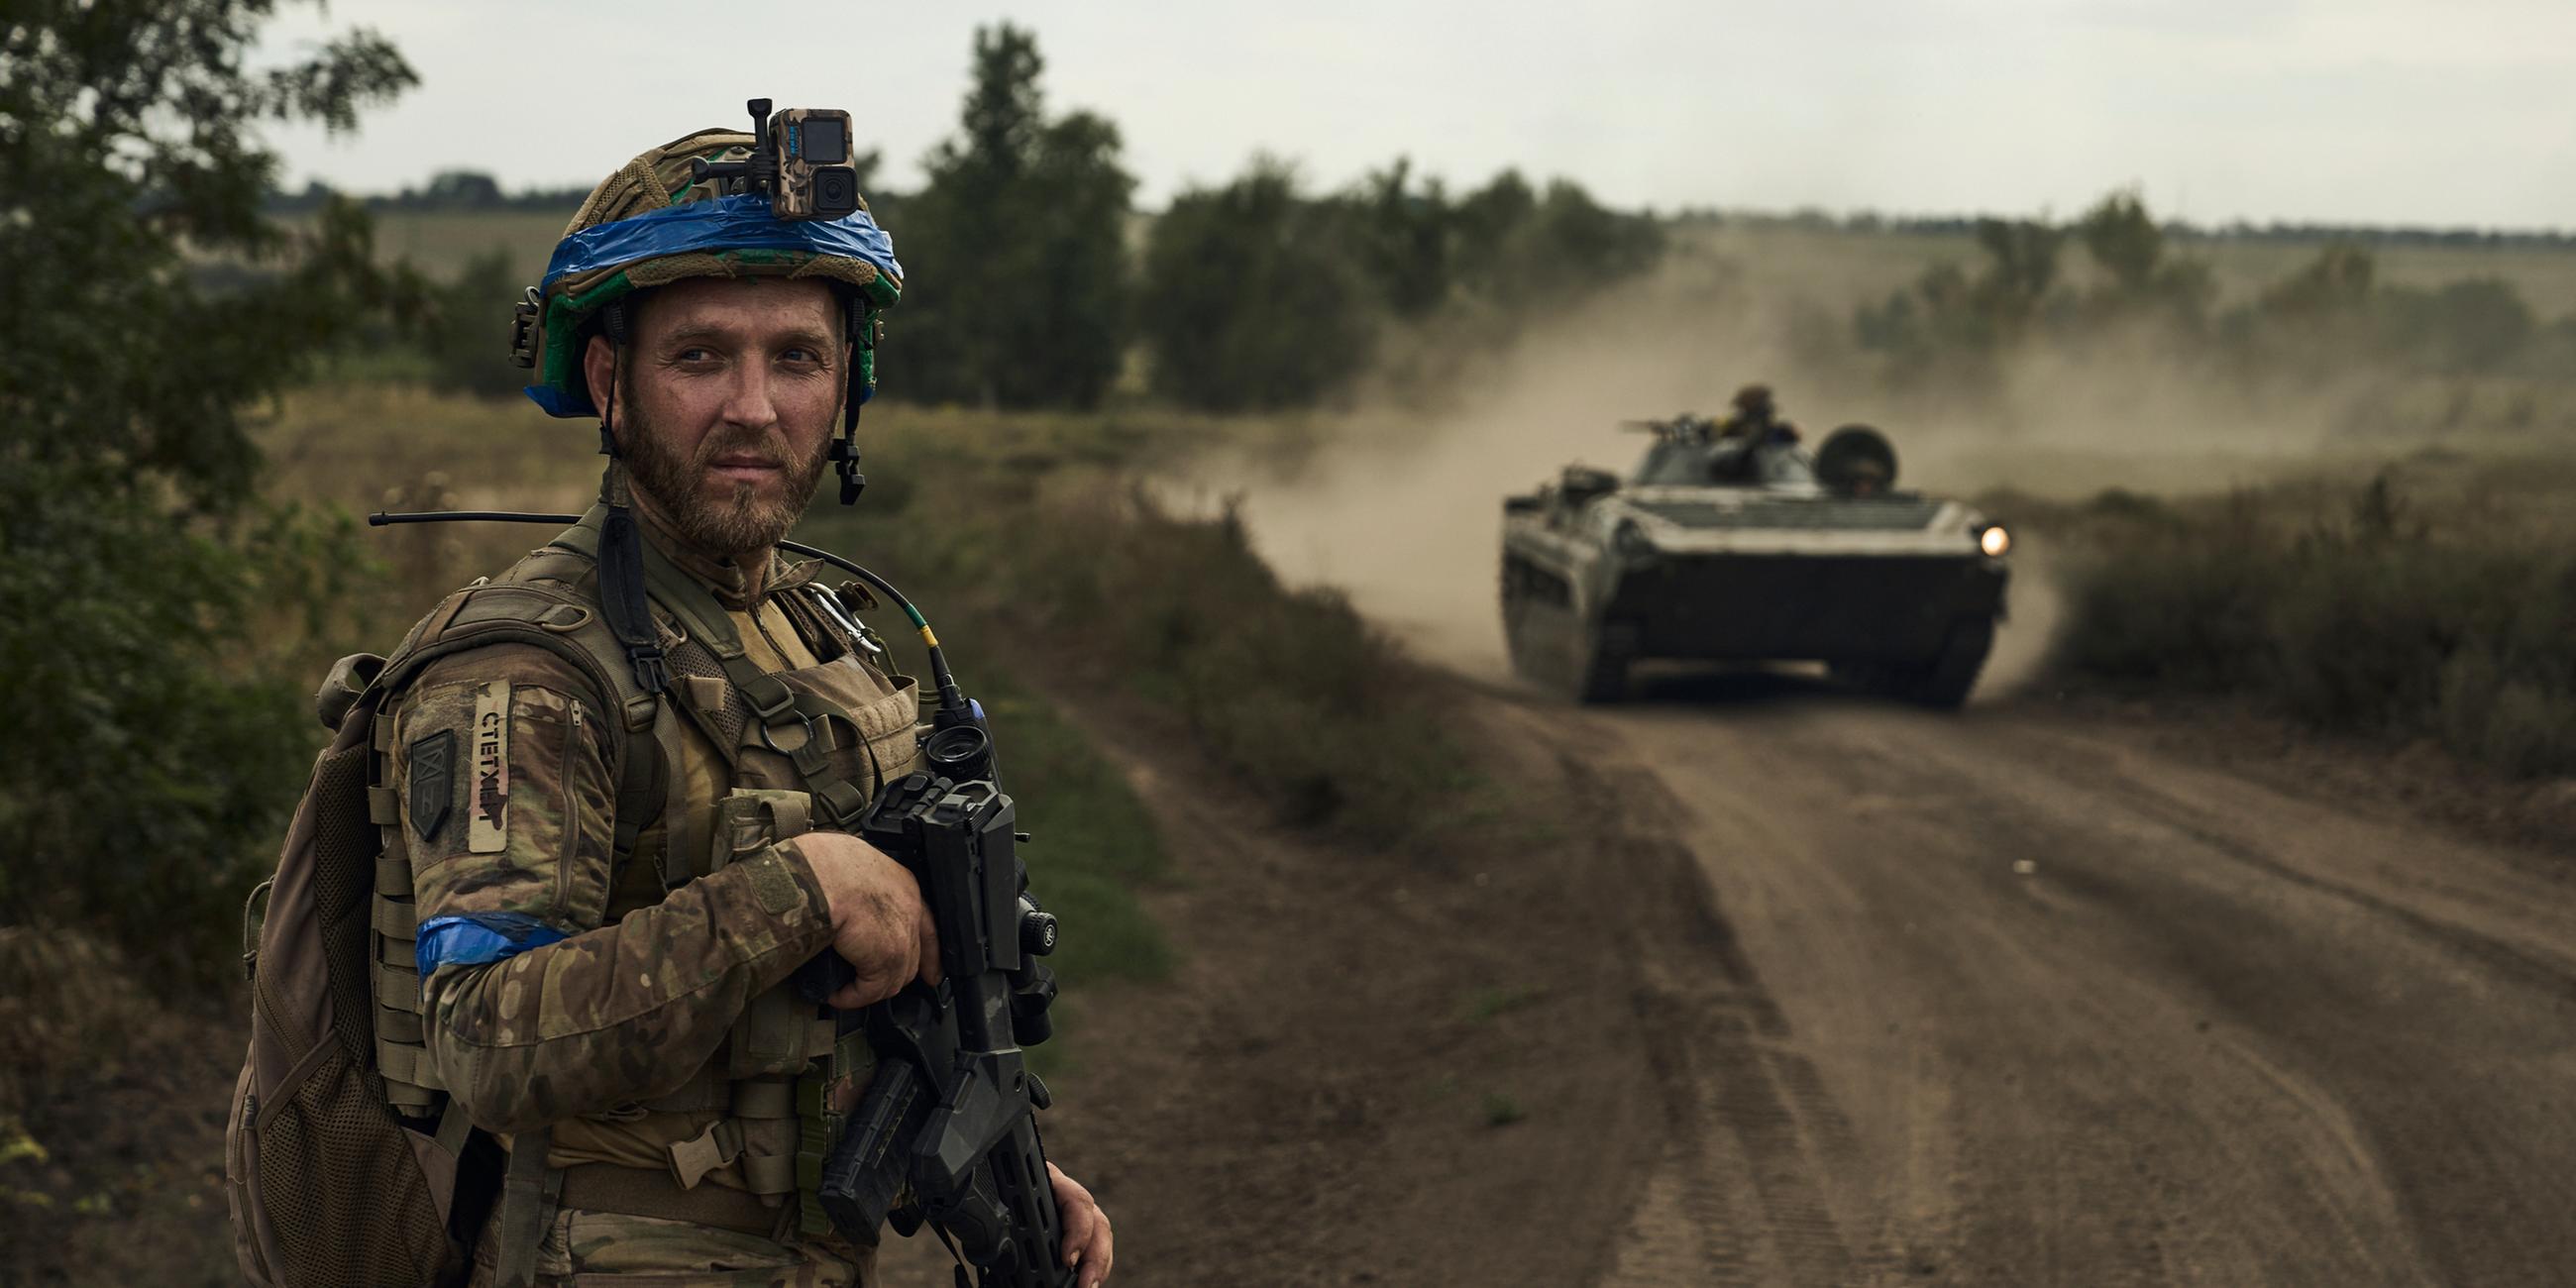 Ukraine, Bachmut: Ein Soldat der 3. Separatistenbrigade der Ukraine blickt auf einen Schützenpanzer.